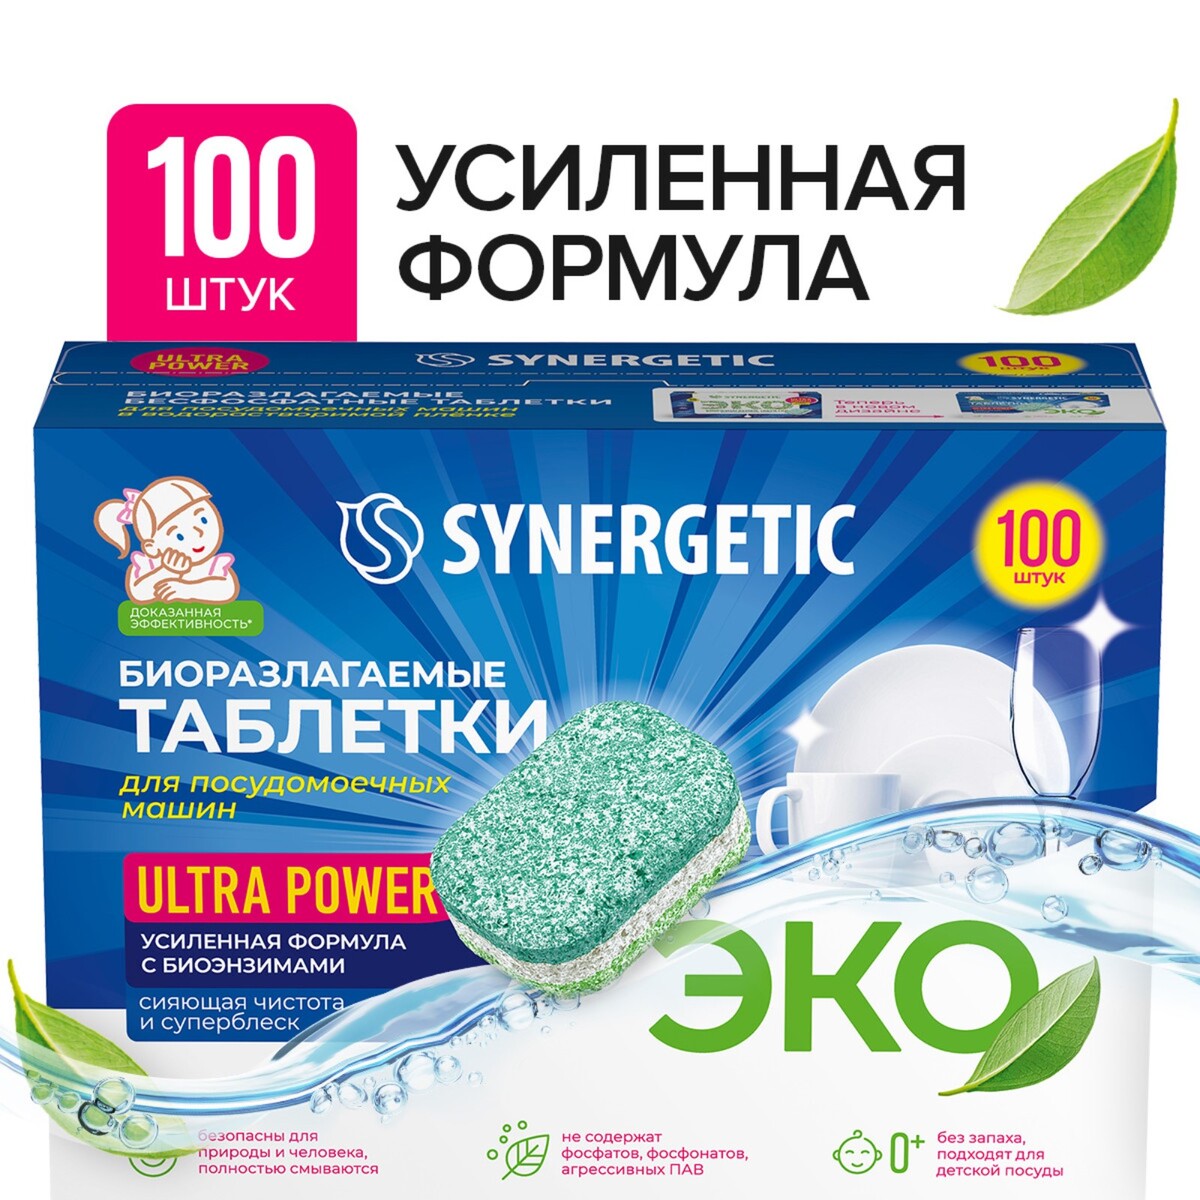 Таблетки для посудомоечных машин synergetic ultra power, бесфосфатные,биоразлагаемые, 100 шт ангиаканд таблетки 8мг 28